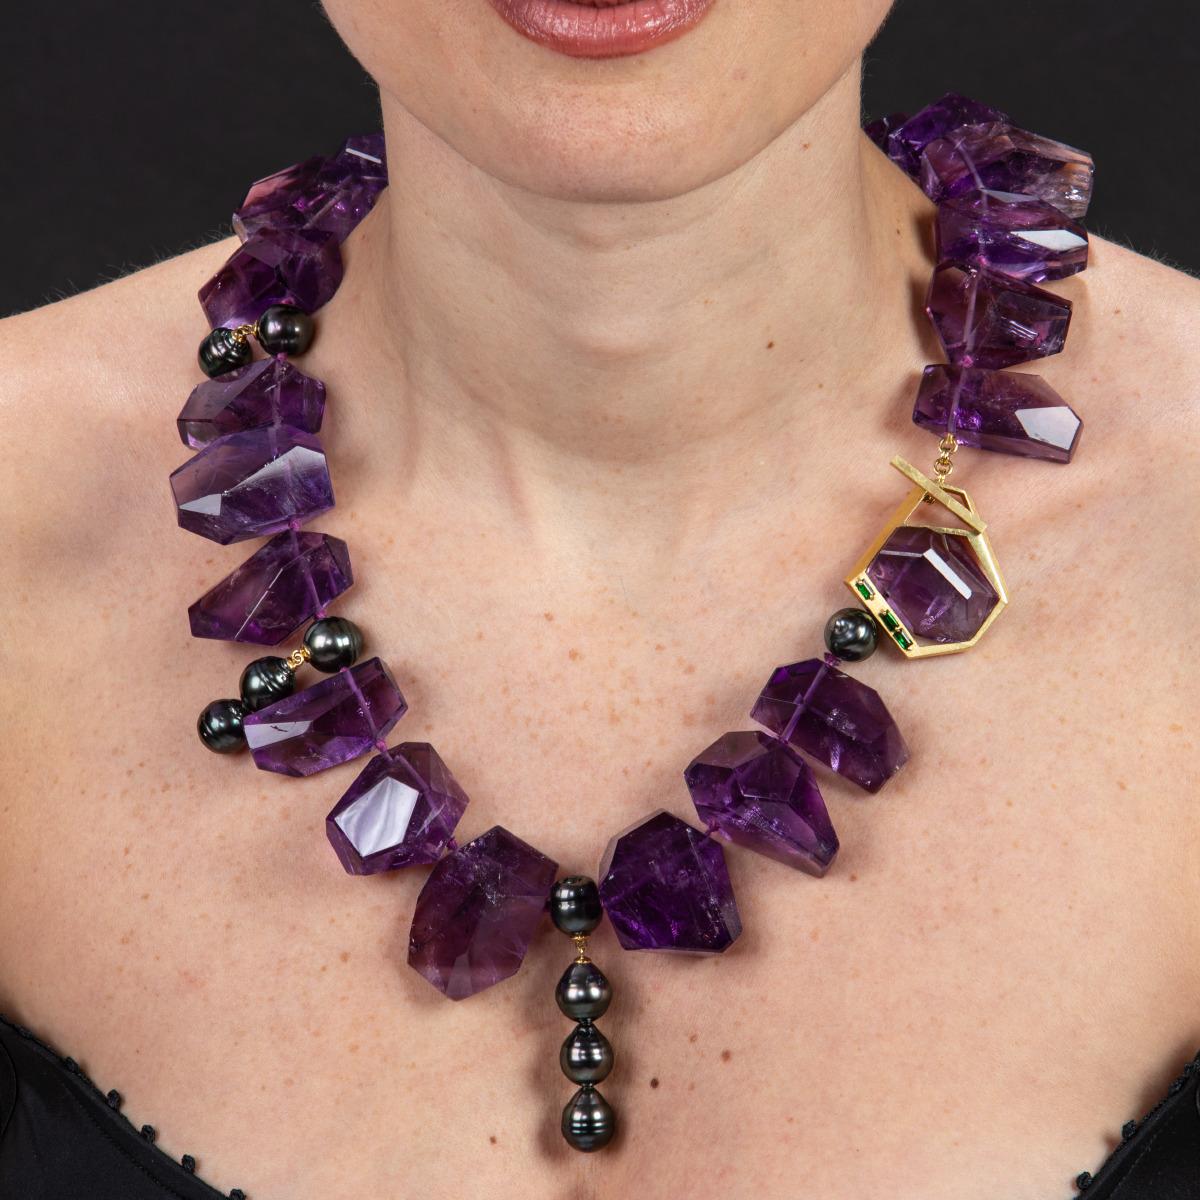 Diese prächtige Halskette strotzt nur so vor Farben und ist ein echter Hingucker. Frei geformte violette Amethyste sind in verschiedenen Schliffen und Größen aneinandergereiht und mit kleinen Strängen aus barocken Tahiti-Perlen durchsetzt, die für